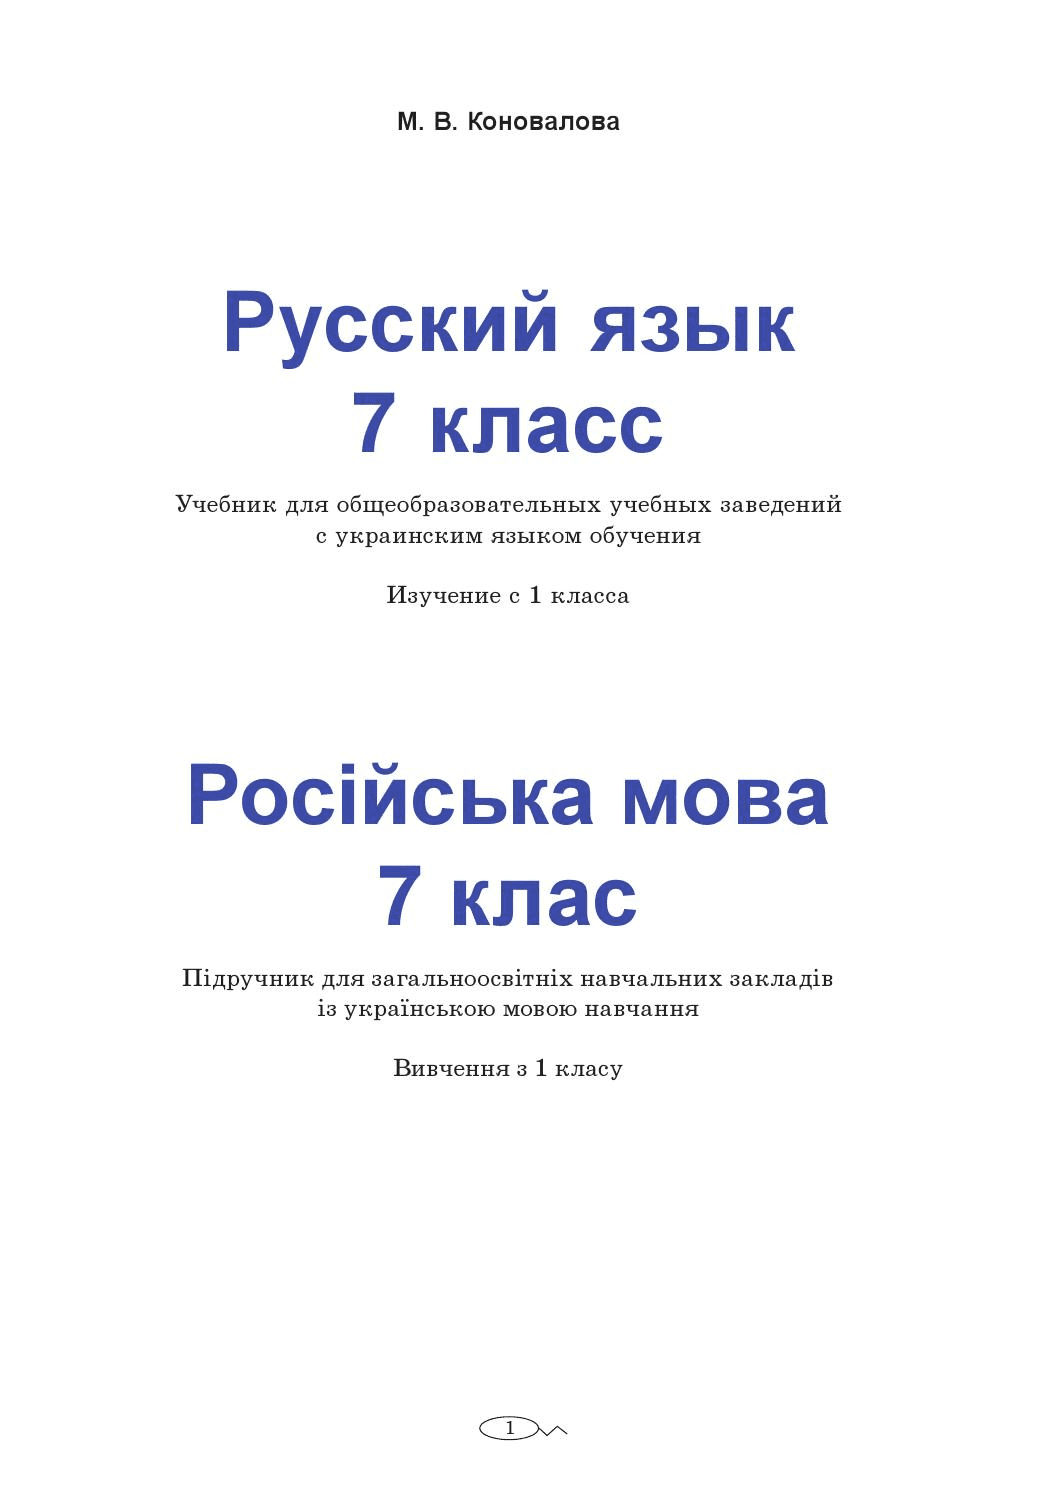 Русский язык 7 класс - Коновалова М. (с украинским языком обучения)